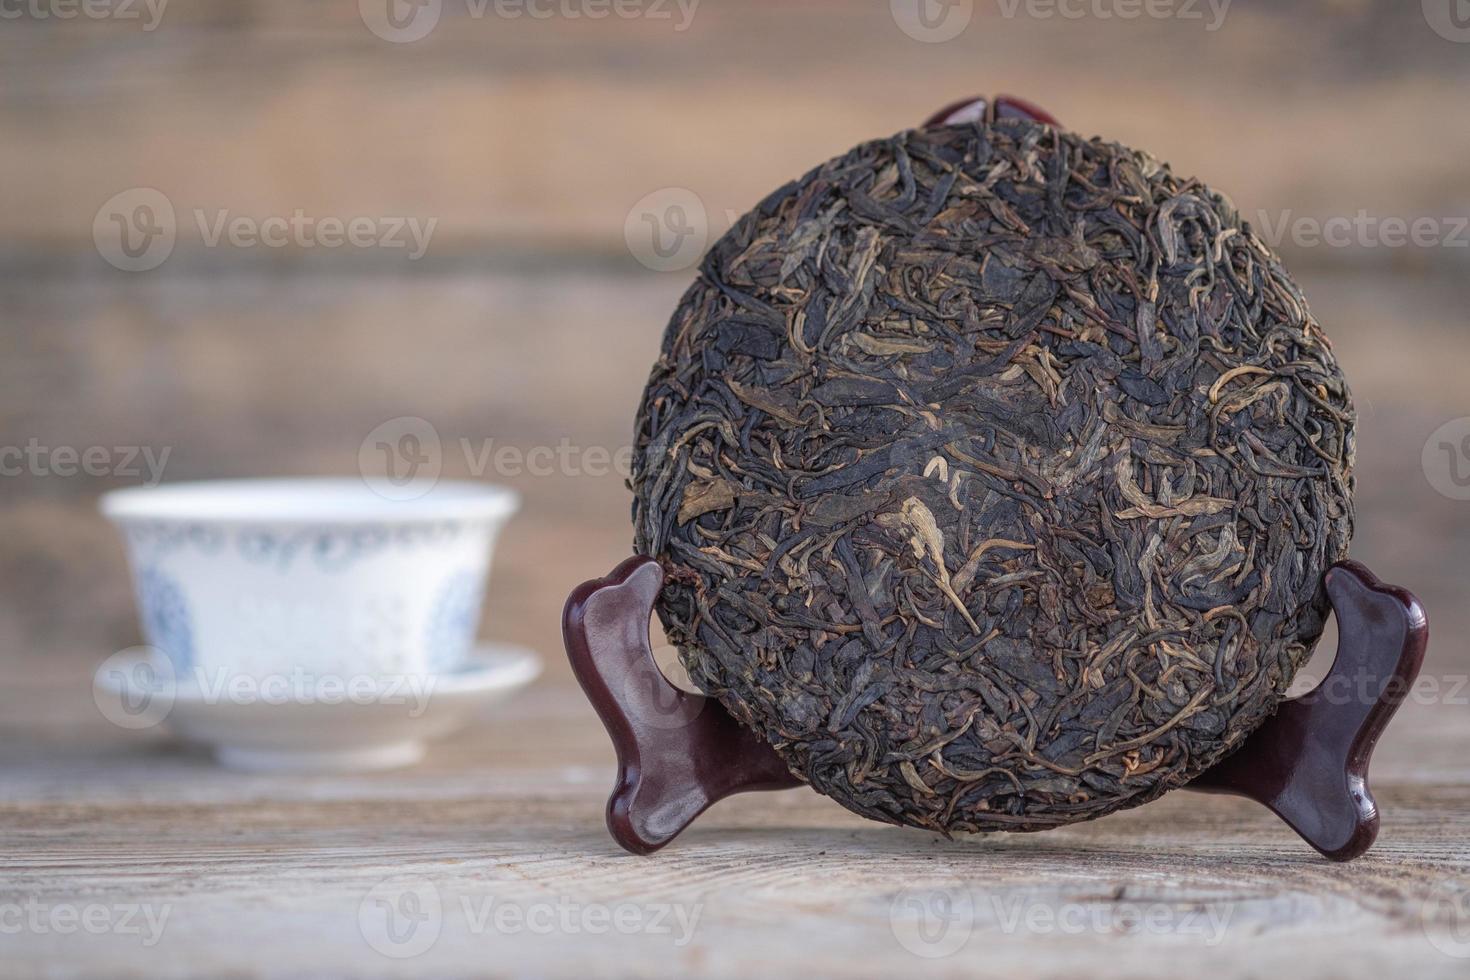 traditionele chinese pu-erh thee op een houten standaard. rauwe gefermenteerde thee in de vorm van een pannenkoek foto